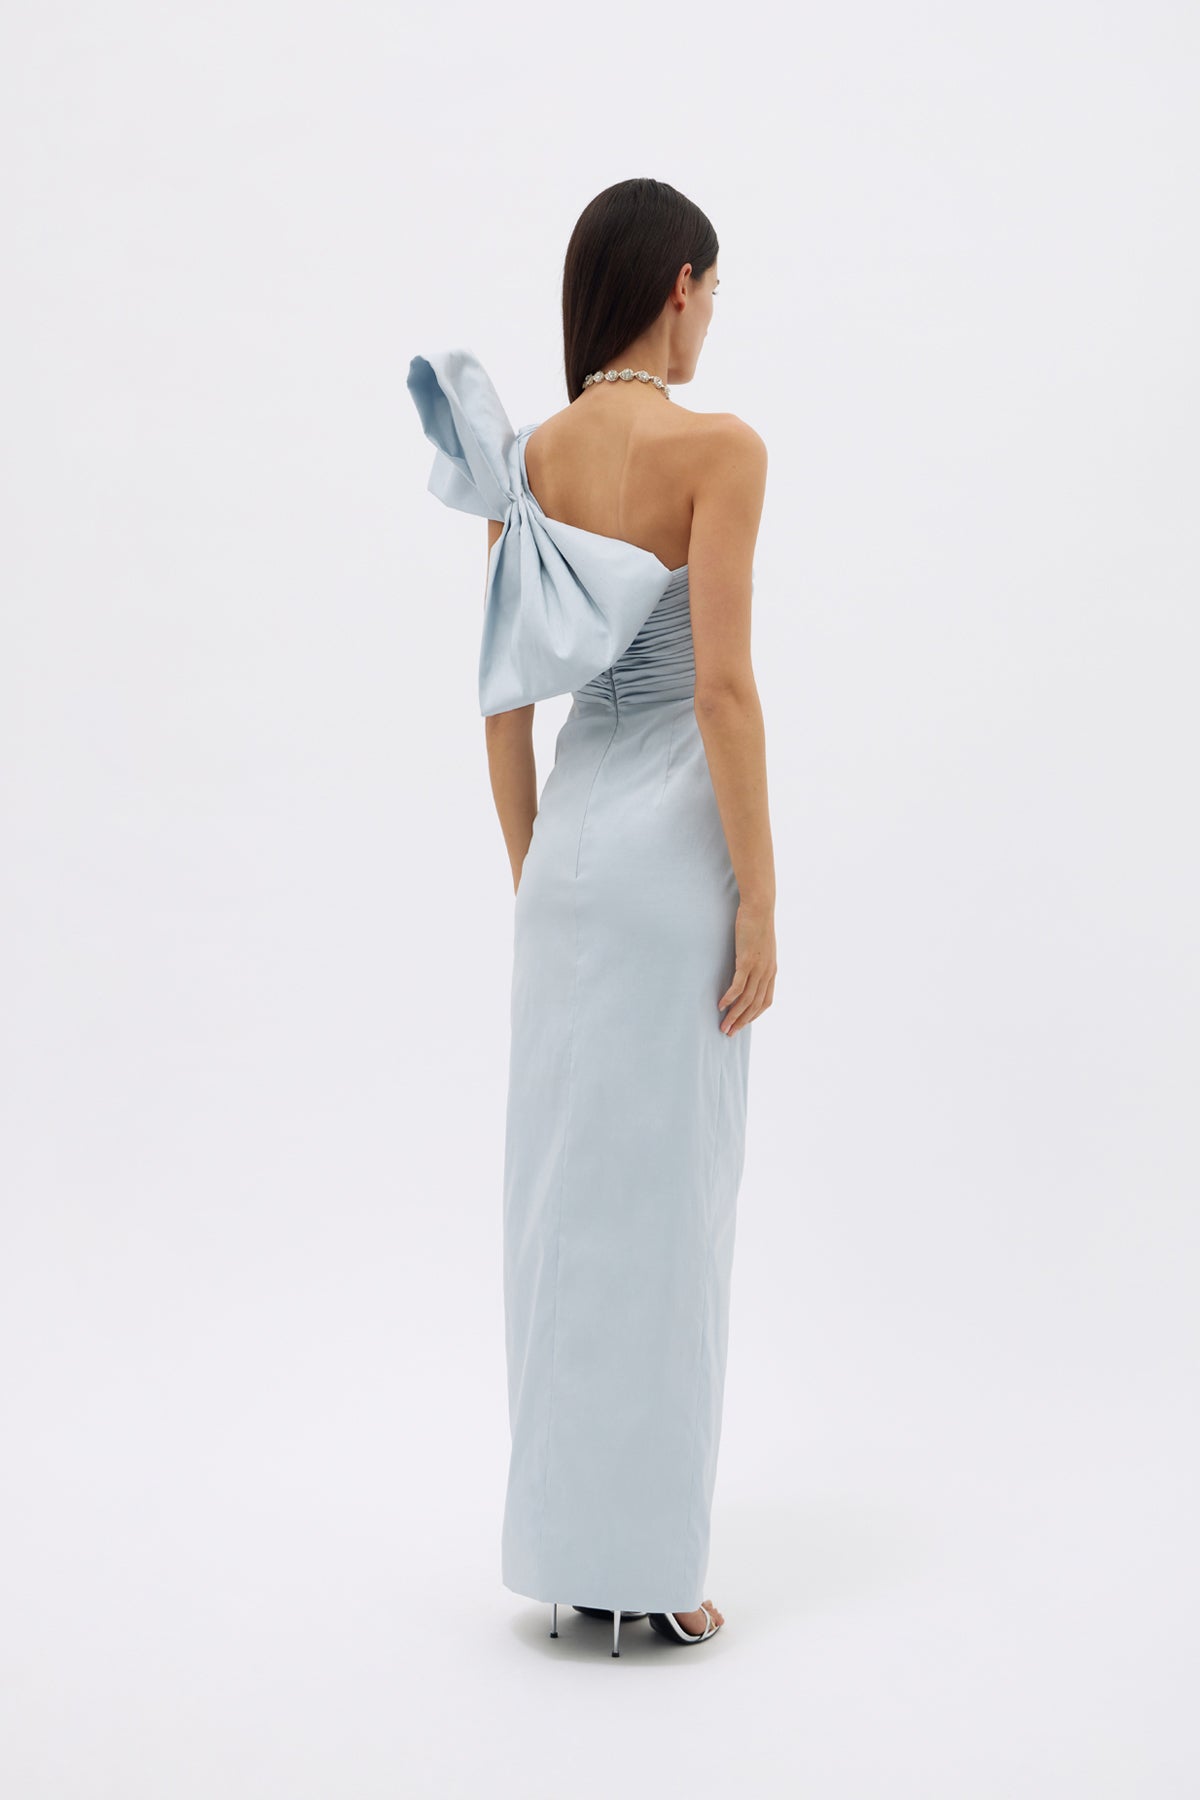 Olive Gown in Ice | Shop Rachel Gilbert Online